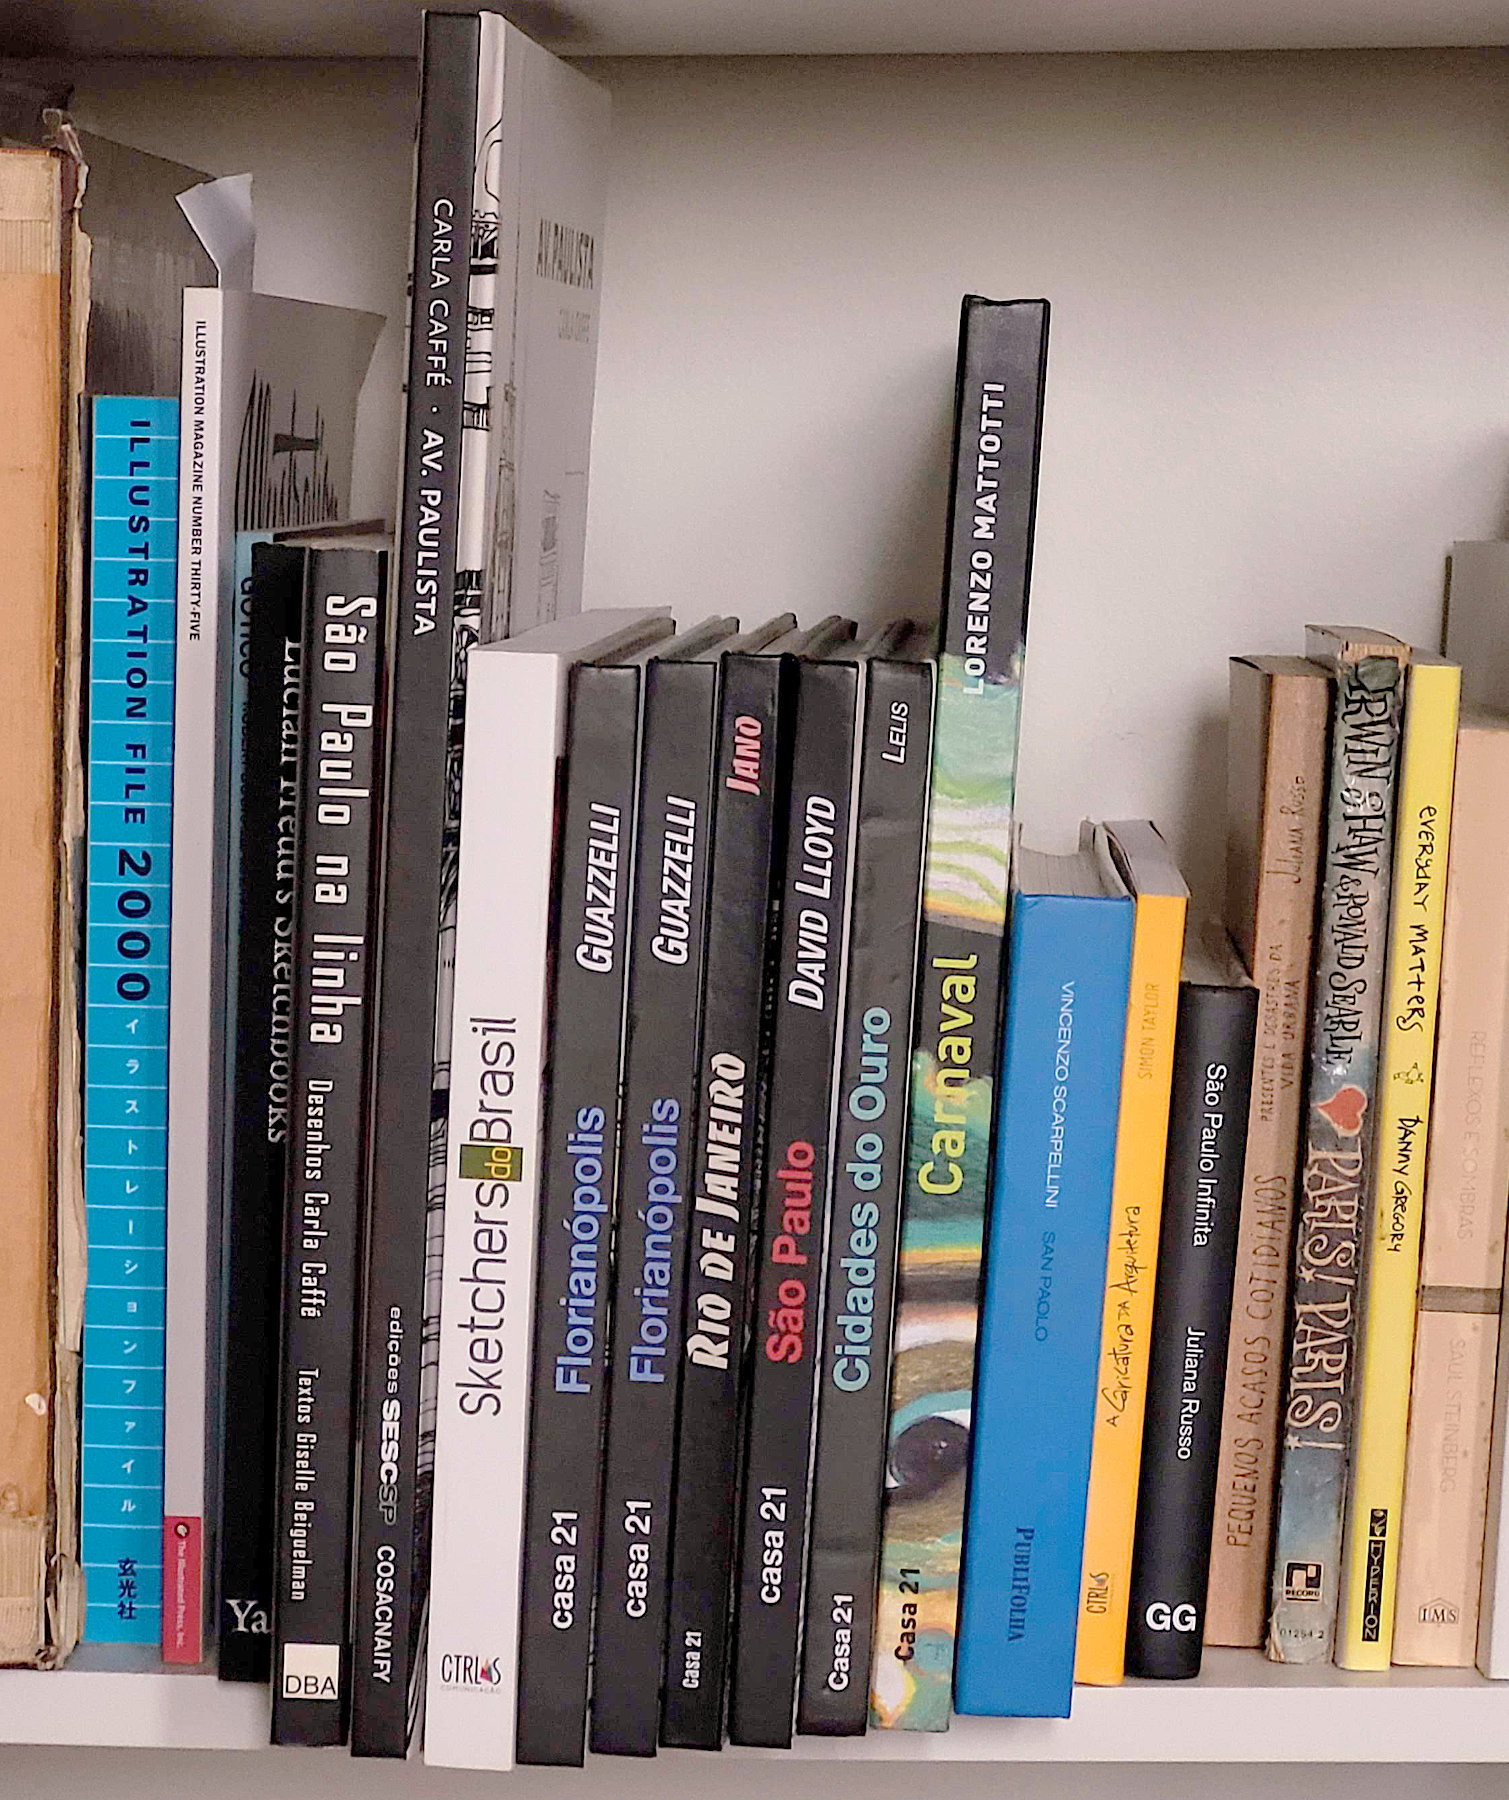 Foto de uma estante com livros de desenho vistos pela lombada